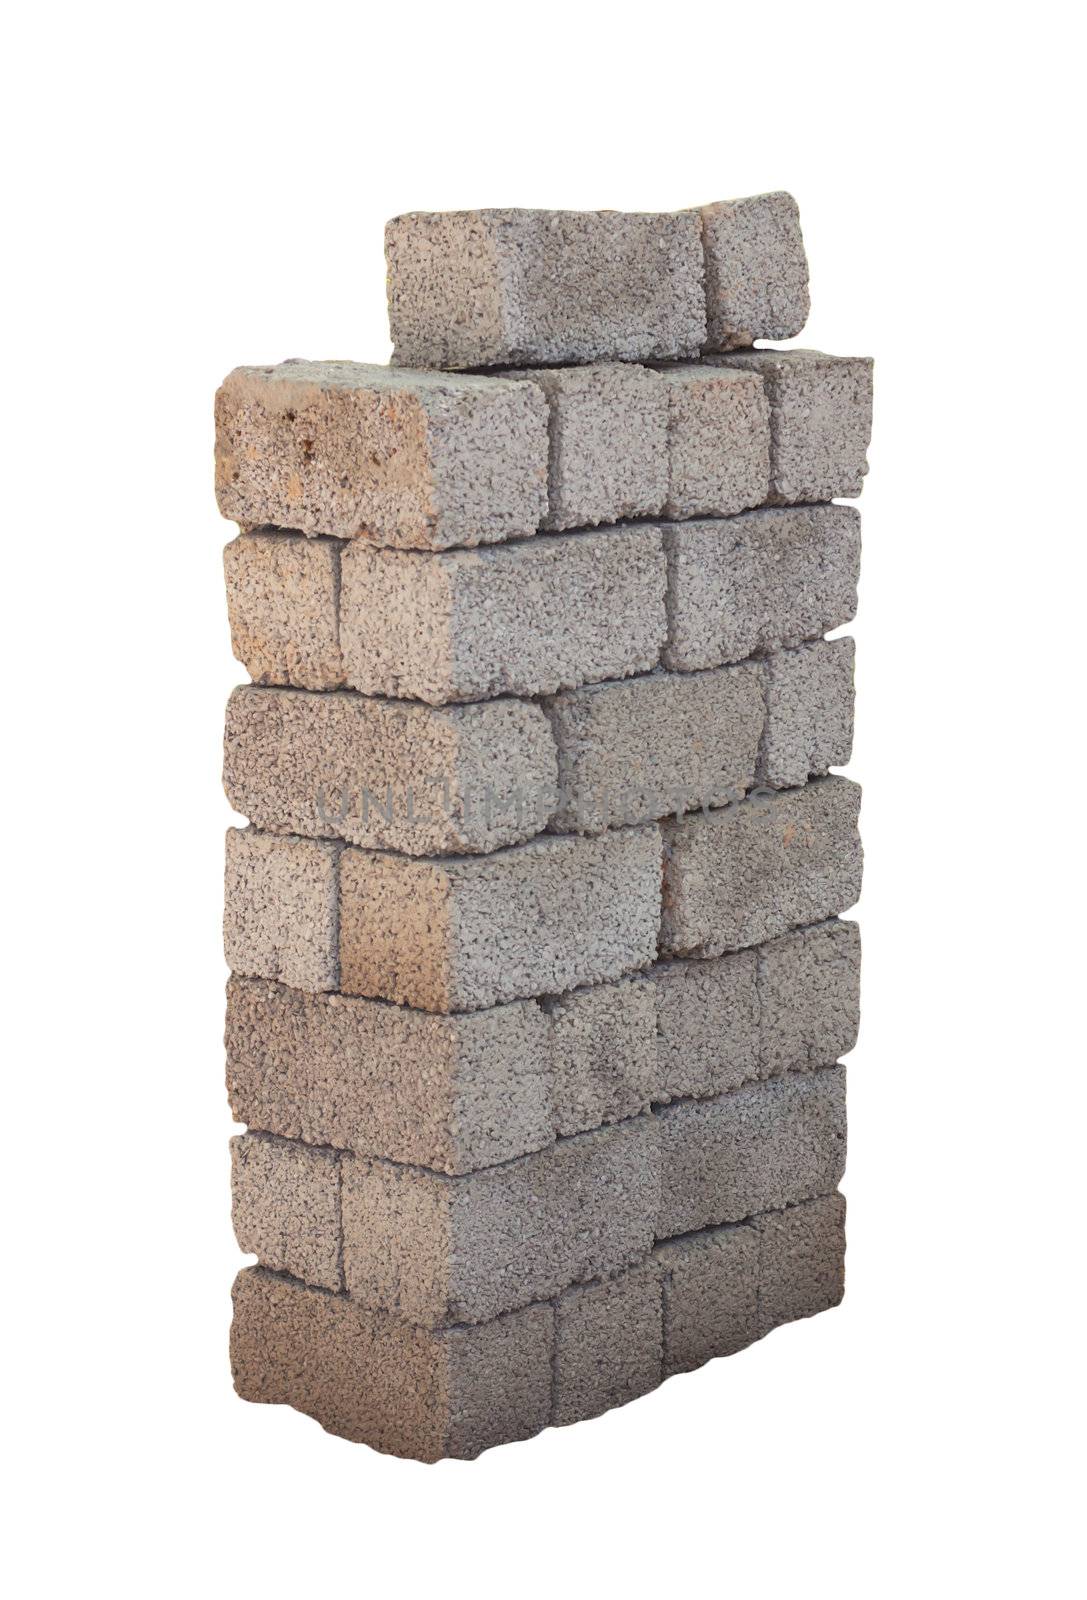 bricks by schankz